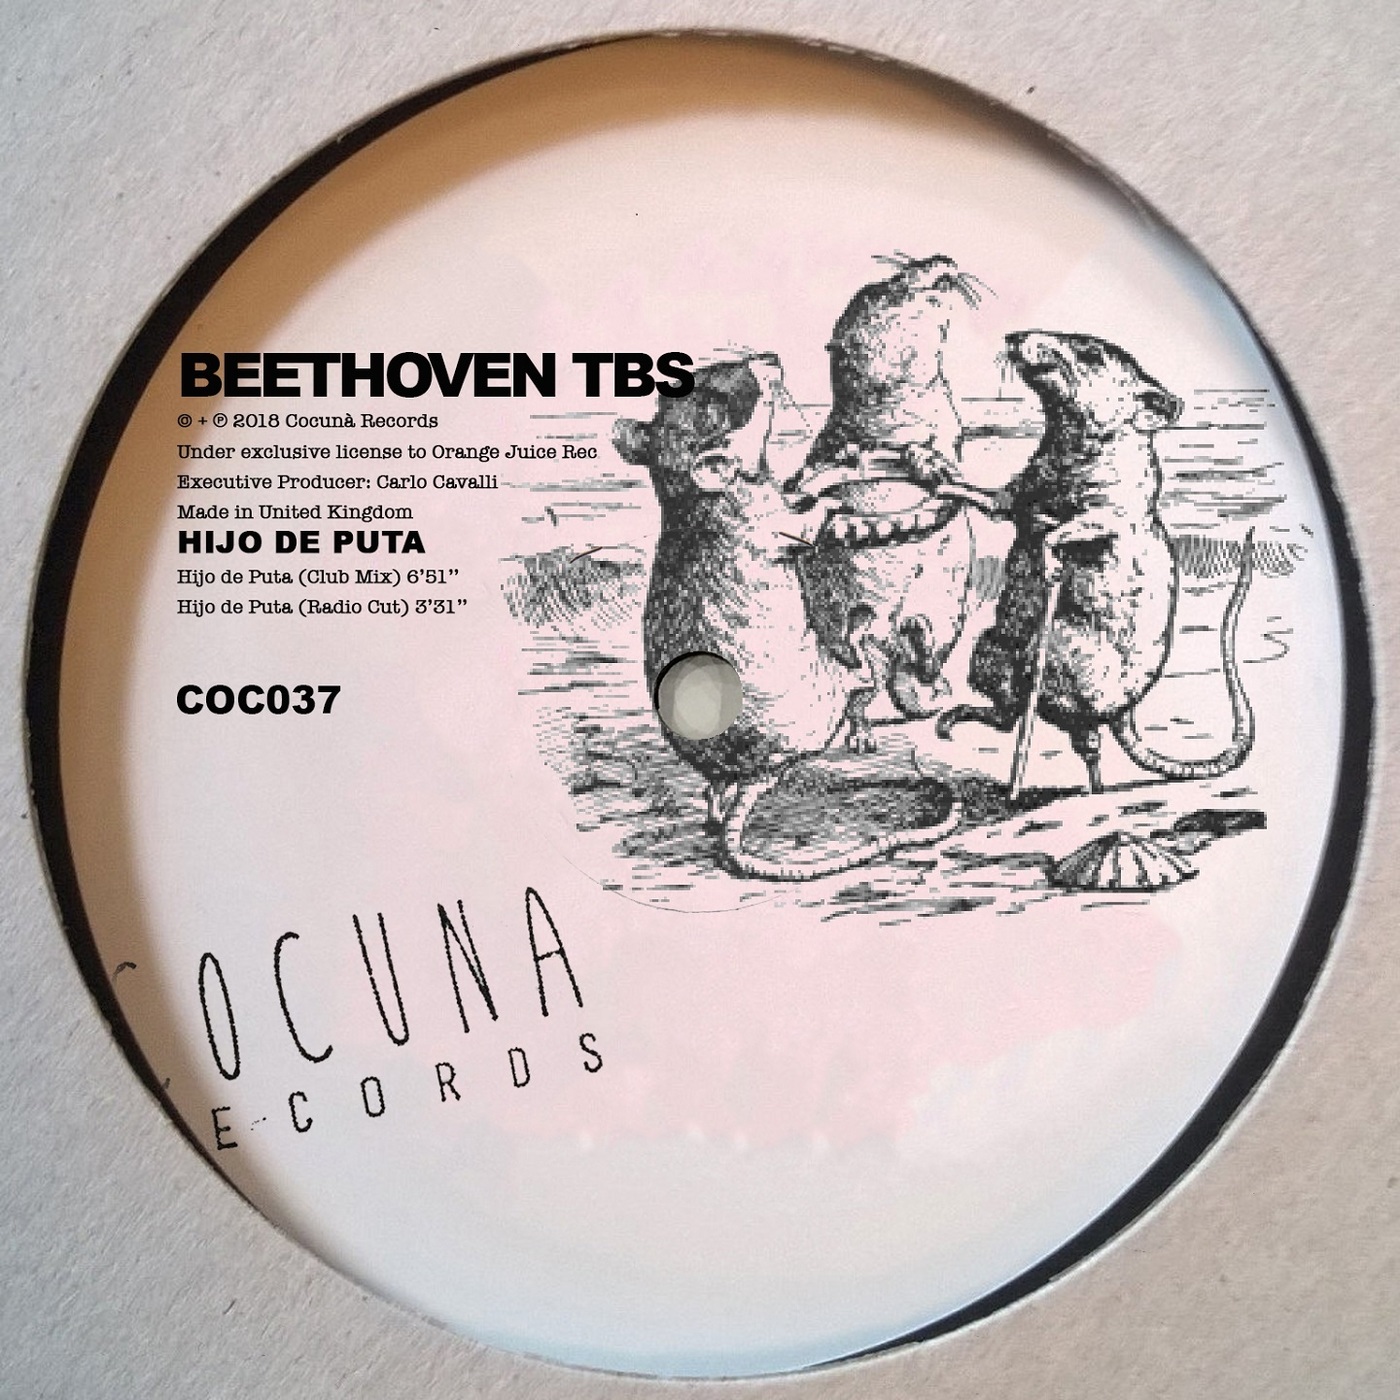 Beethoven tbs - Hijo de Puta / Cocunà Records